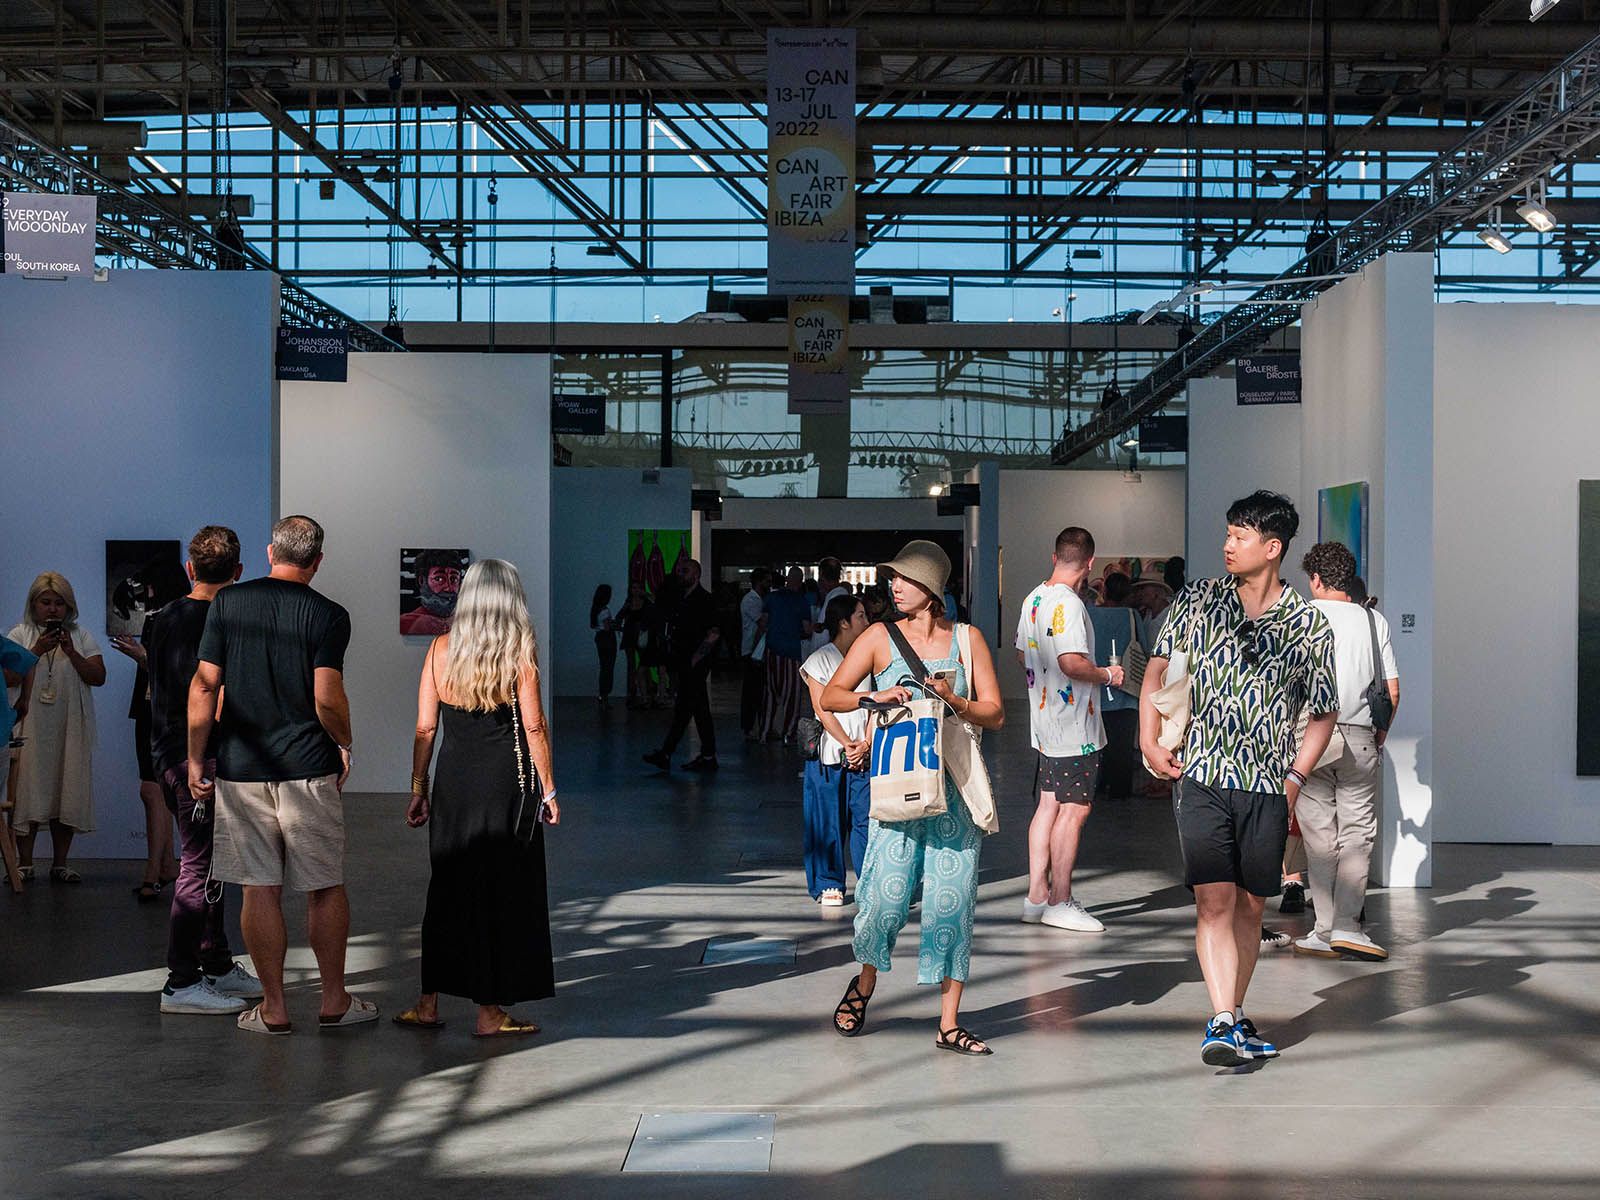 Vuelve CAN Art Fair Ibiza, la cita con el arte en verano